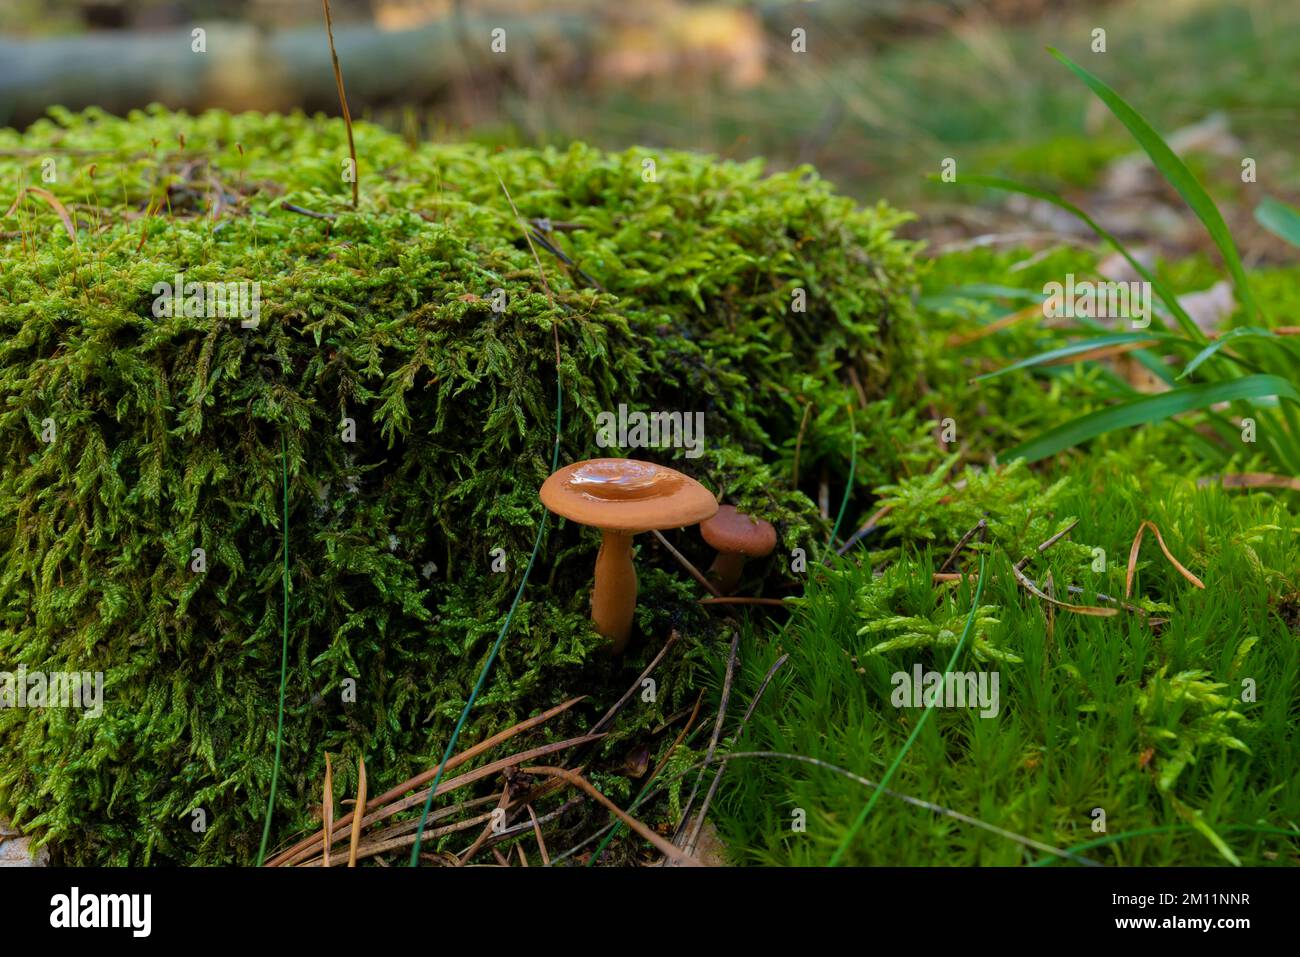 Funghi velenosi, piccoli funghi velenosi castani nella foresta in autunno Foto Stock